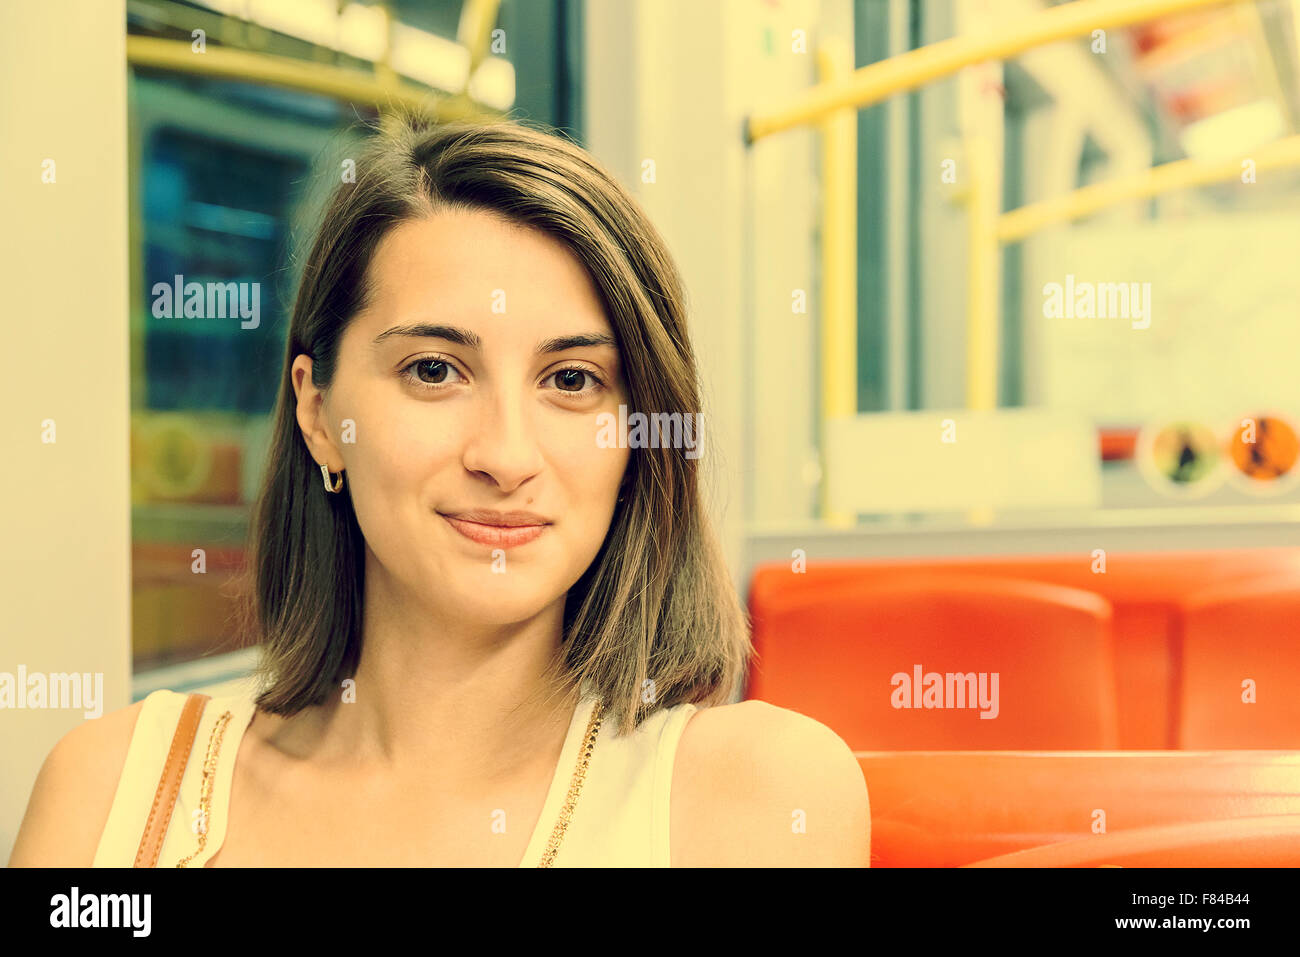 Retro Photo de jeune fille voyageant par les transports En métro Banque D'Images